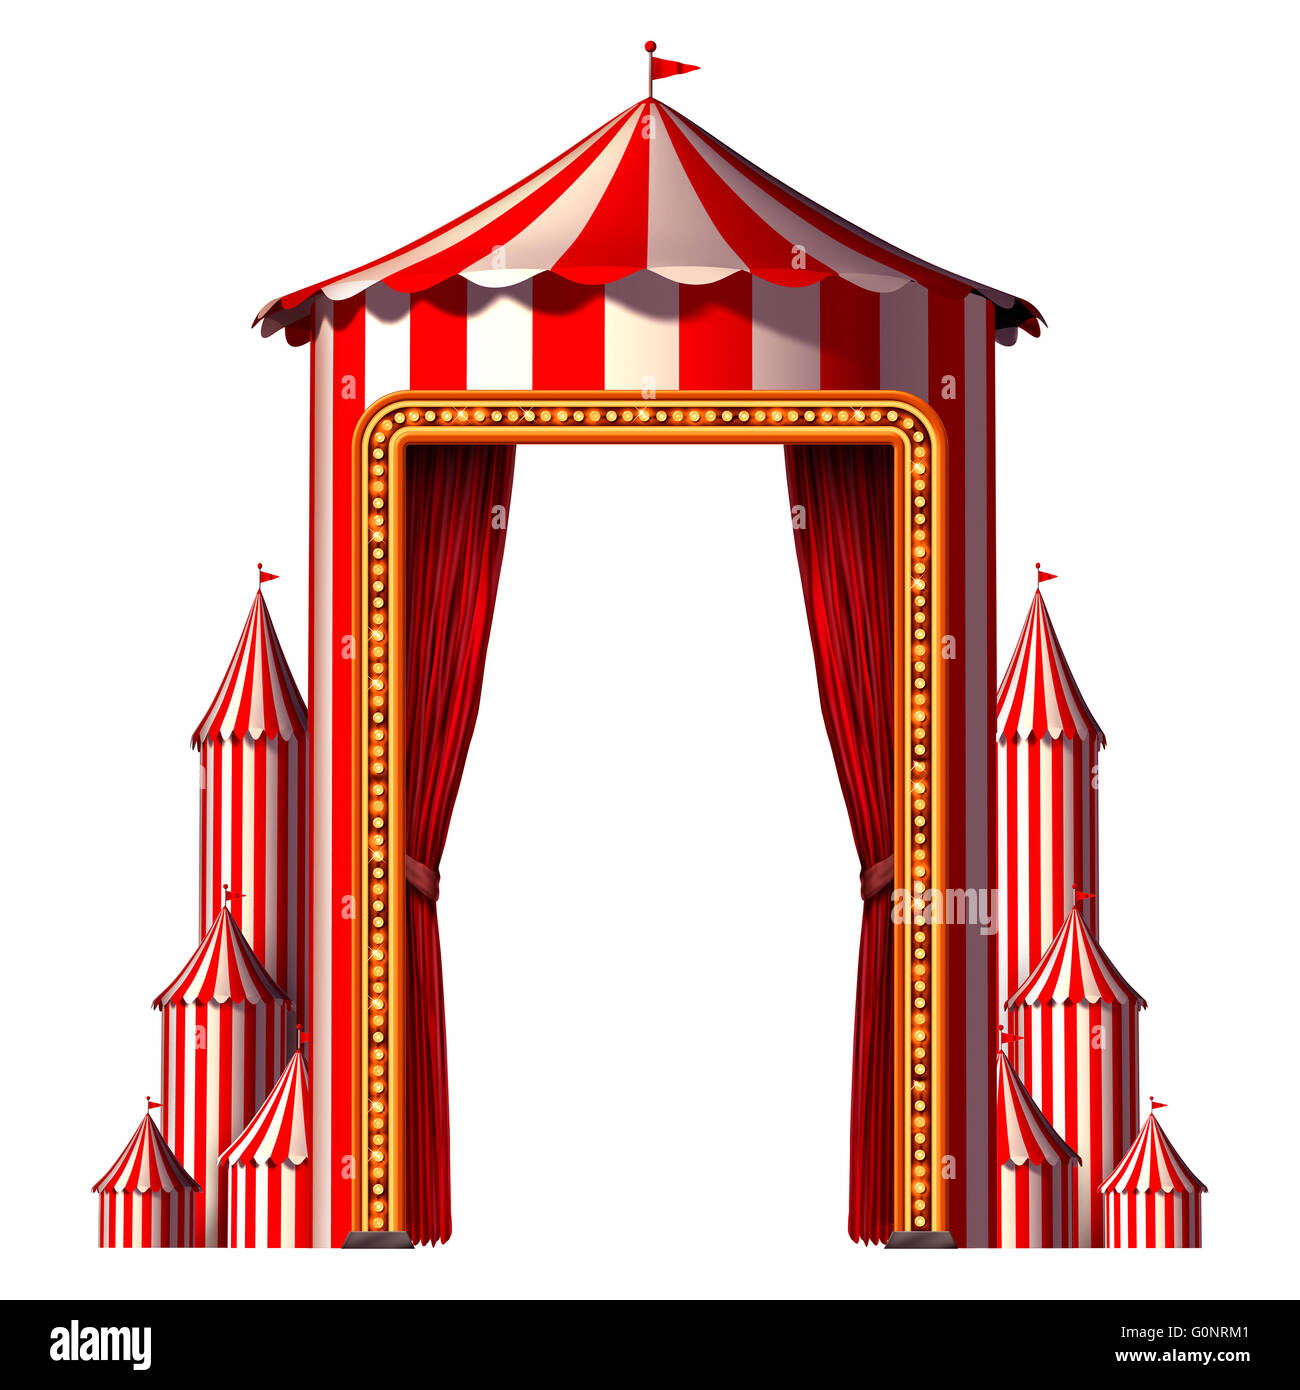 Zirkus Zelt in einer vertikalen Karneval Komposition Aan Unterhaltung Ans Vergnügen Symbol für eine festliche Veranstaltung Feier mit Leerzeichen isoliert auf einem weißen Hintergrund als ein 3D Illustration Konzept. Stockfoto